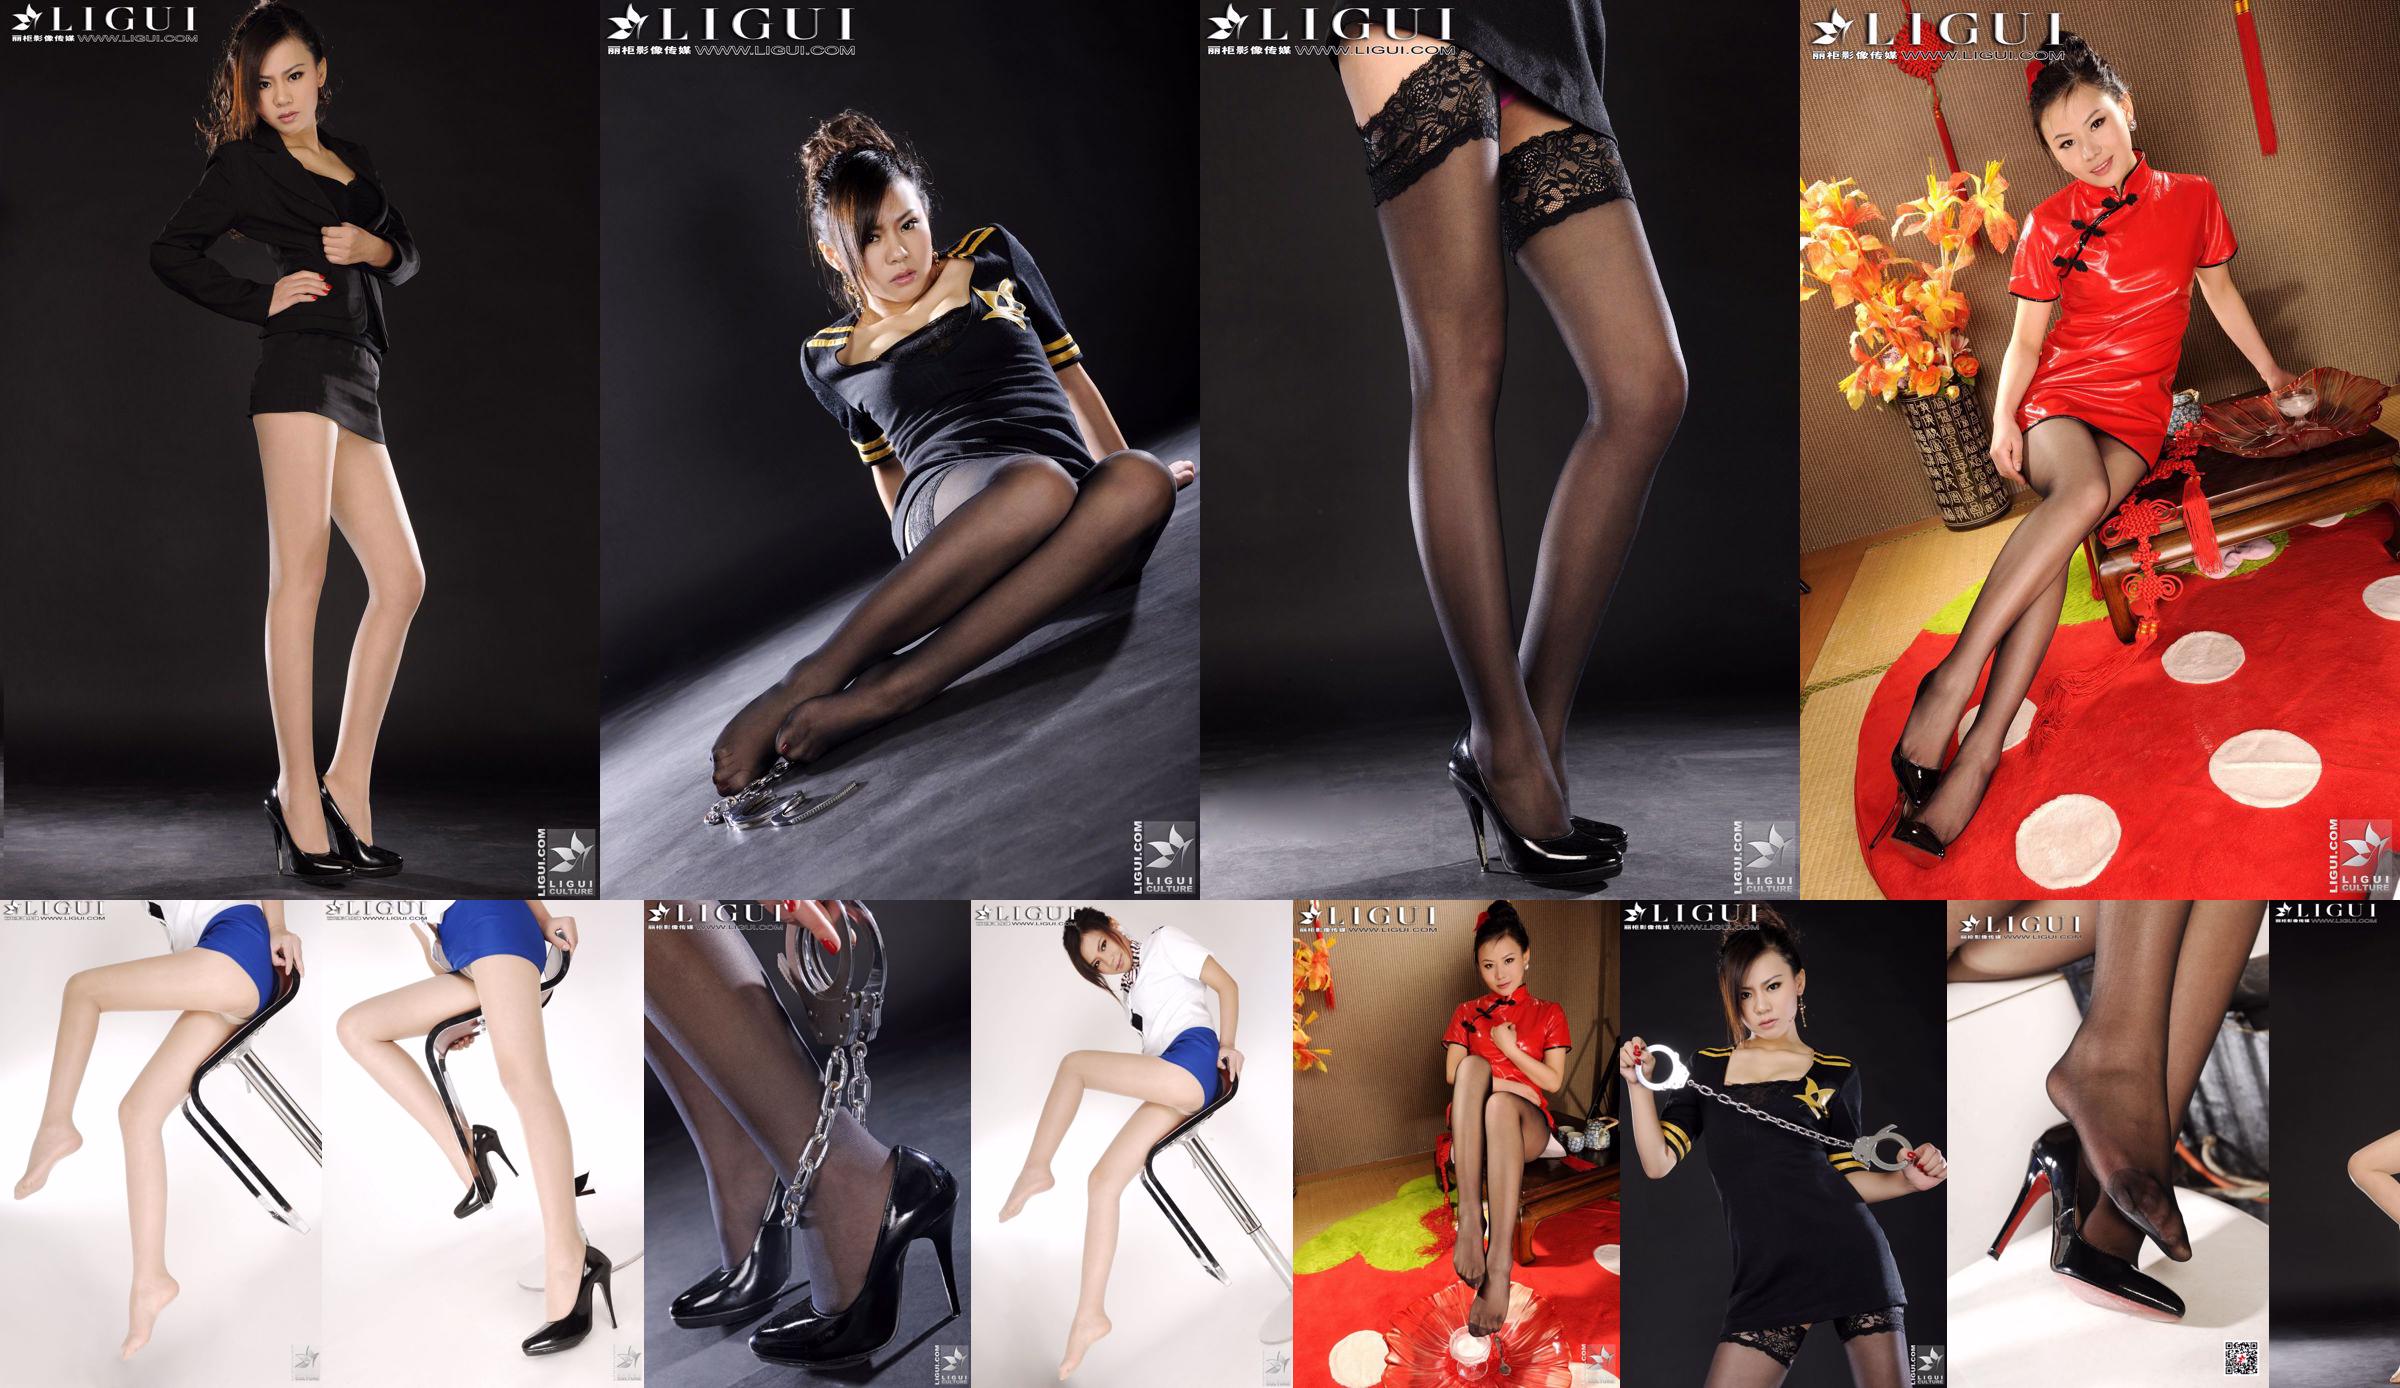 Modelo Sophie "Policial de Seda Negra" [Li Gui Mei Shu LiGui] Belas pernas e pés de jade foto foto No.03373b Página 1